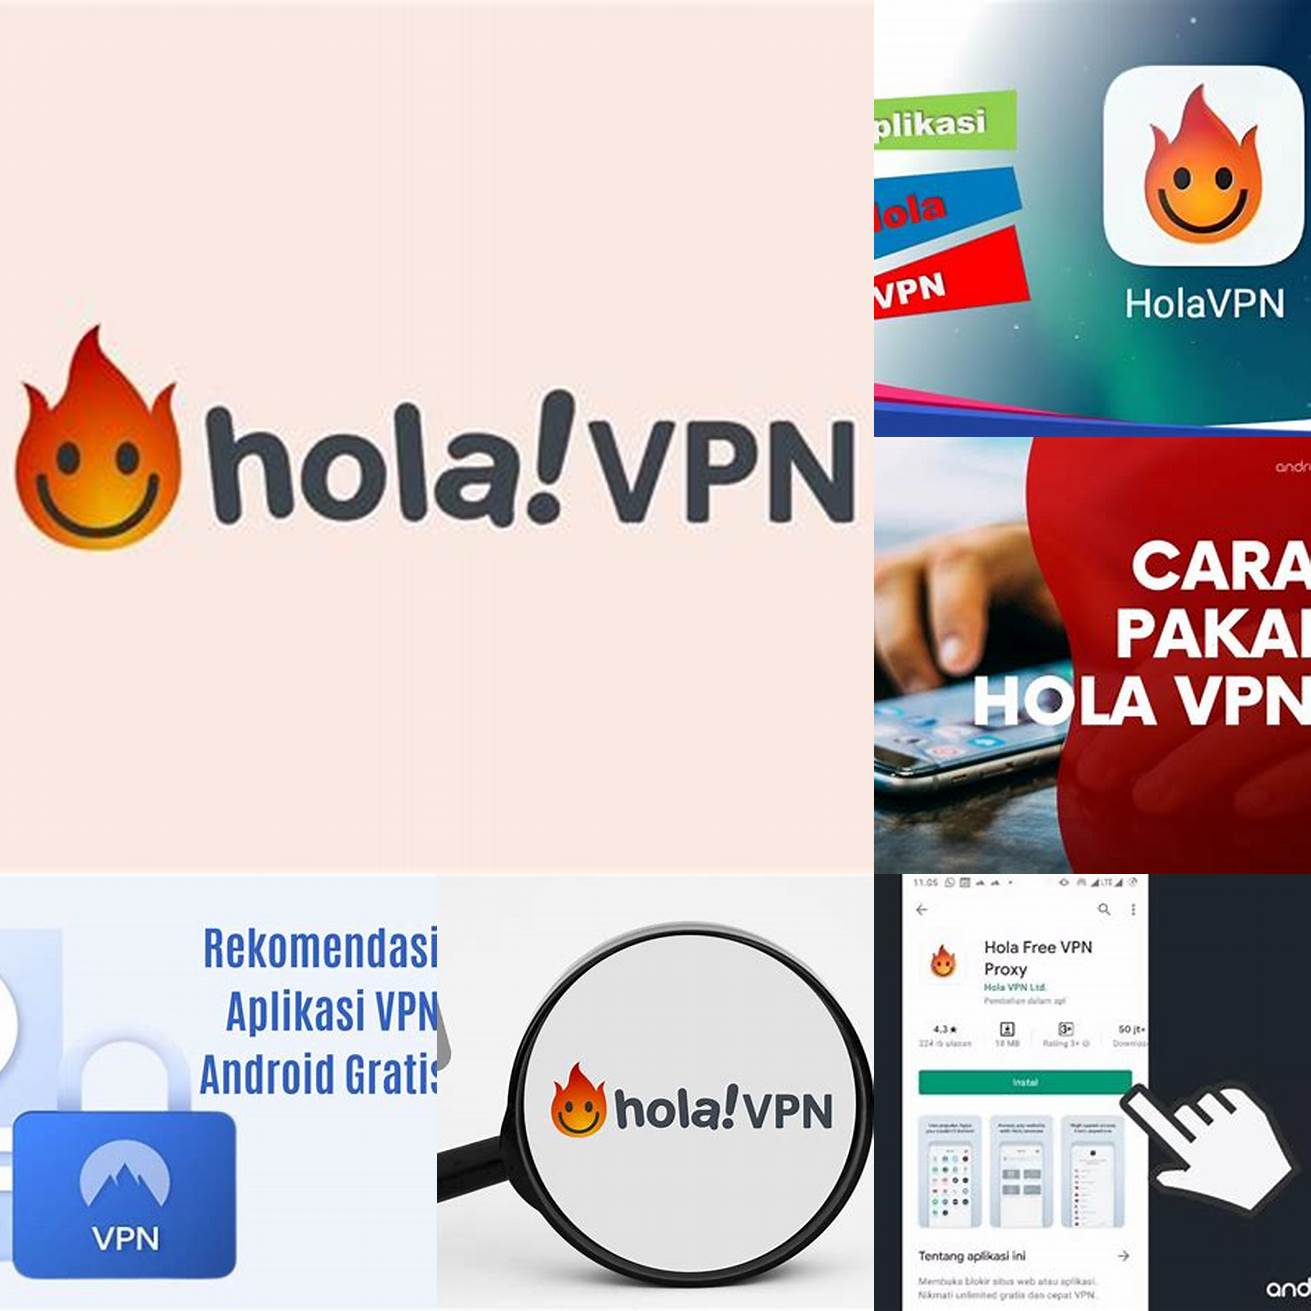 Anda siap menggunakan Hola VPN